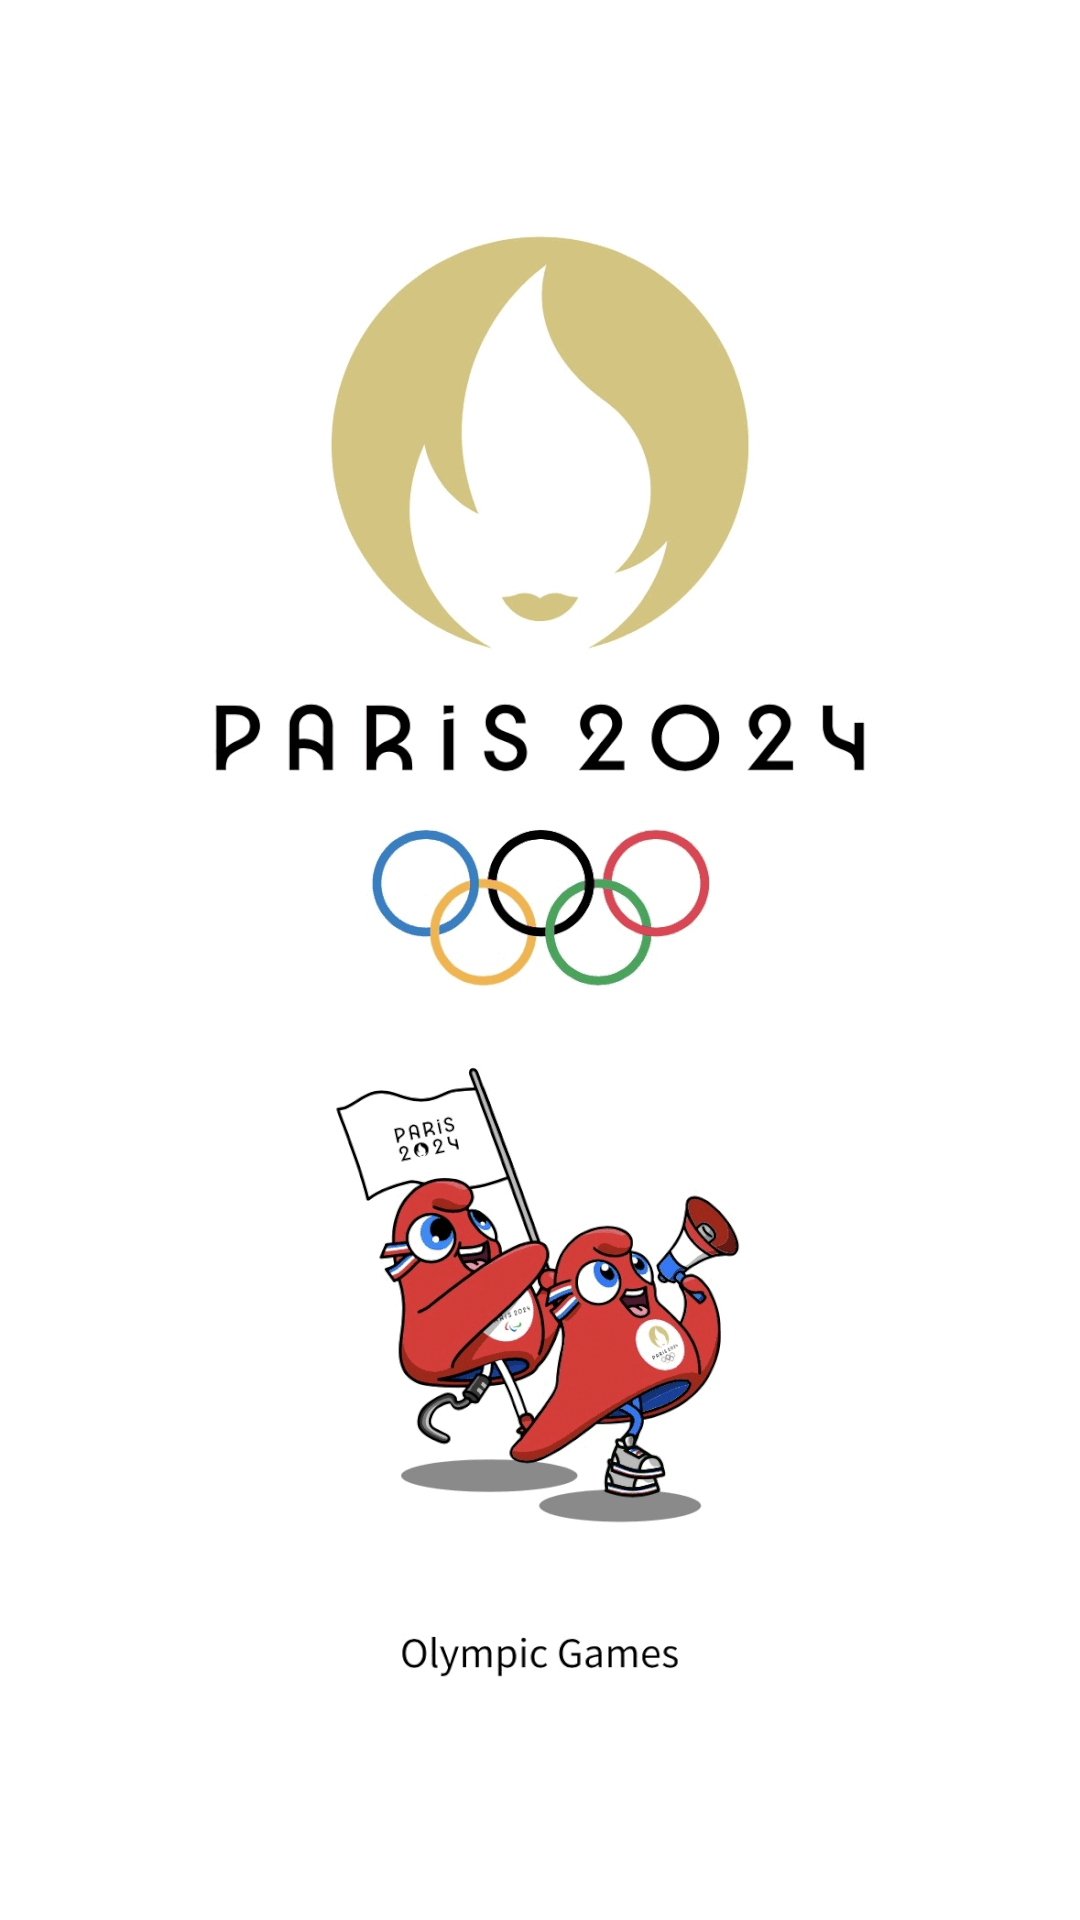 【注意喚起】 パリ2024オリンピックに関連した詐欺サイトへの誘導に注意!